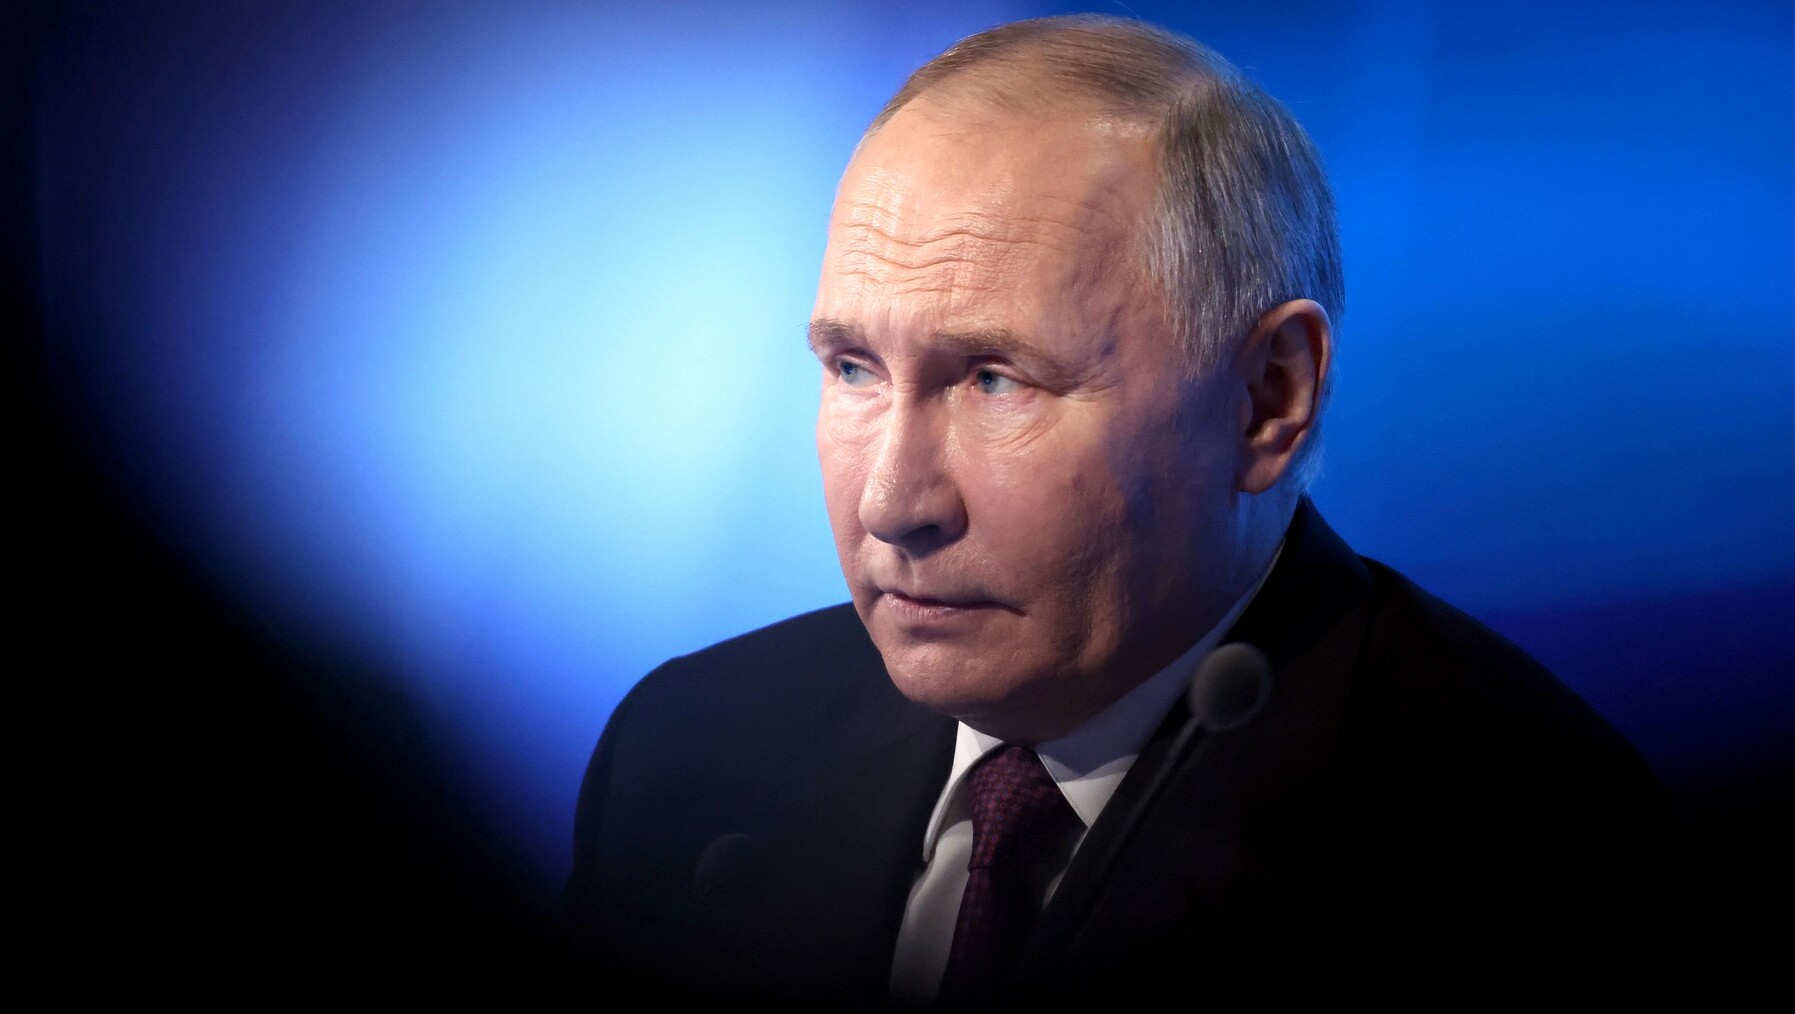 ФОМ: Большинство россиян доверяют Путину и считают, что он работает хорошо